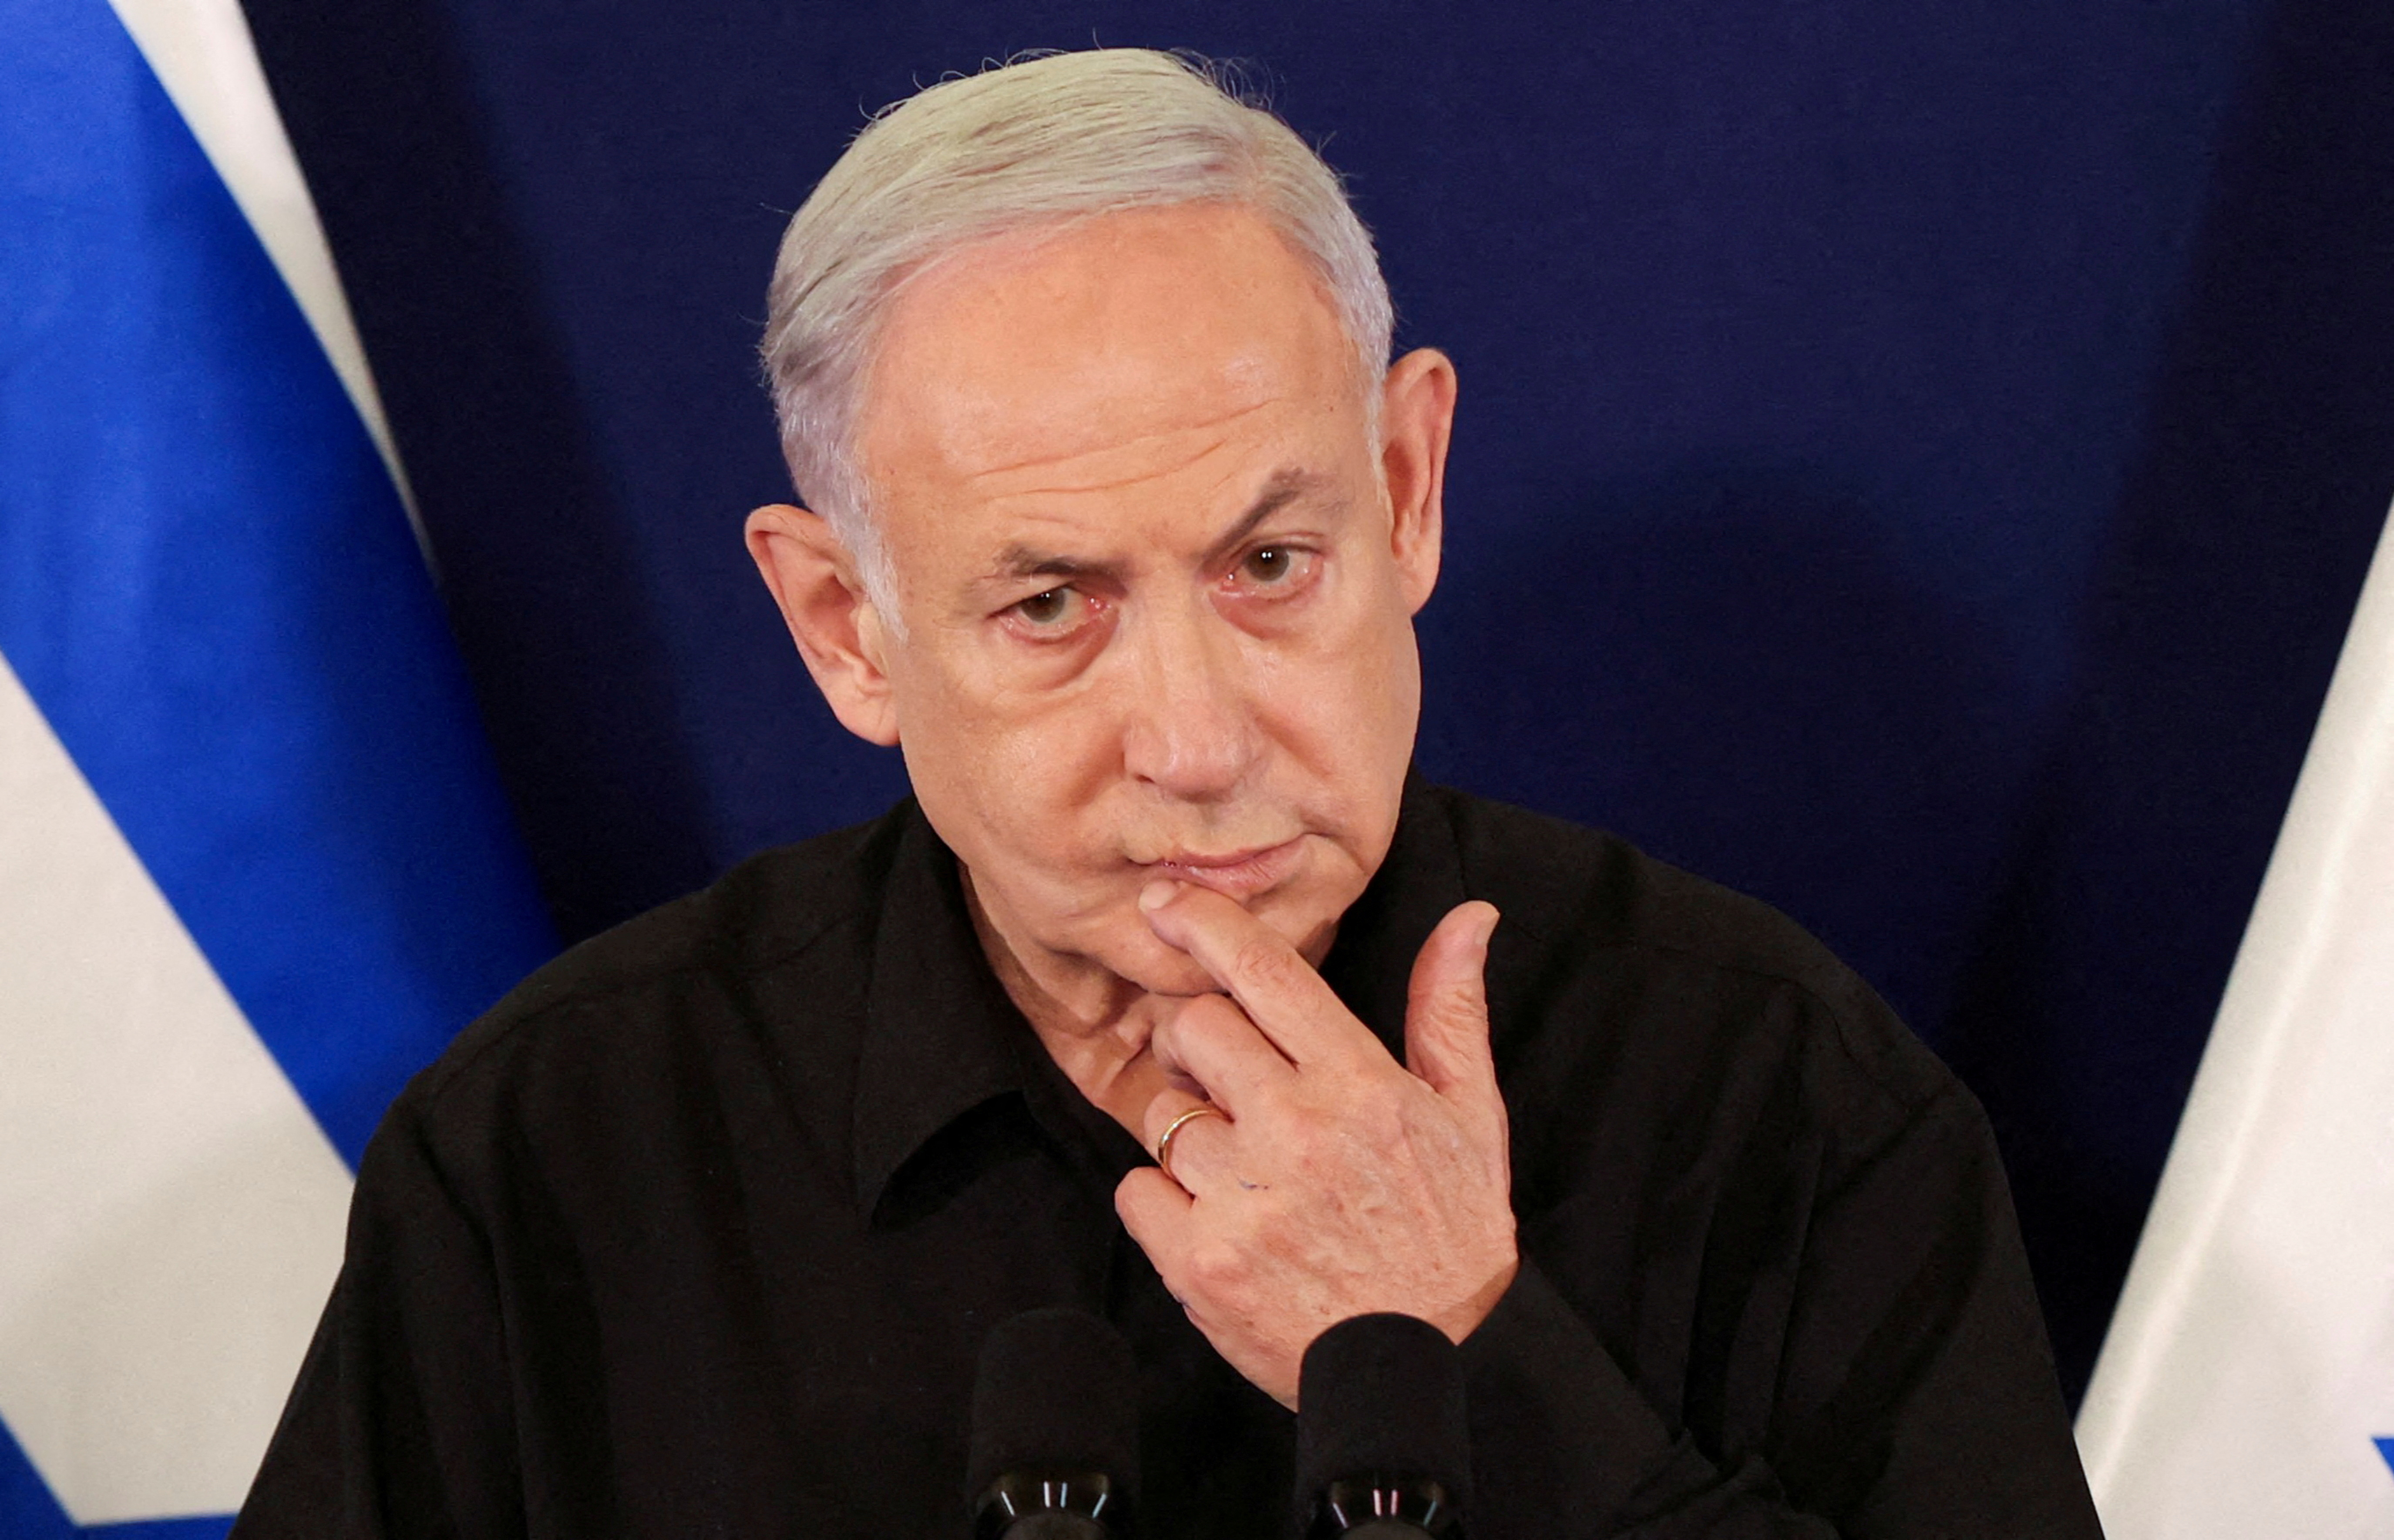 Israeli Prime Minister Netanyahu holds a press conference in Tel Aviv